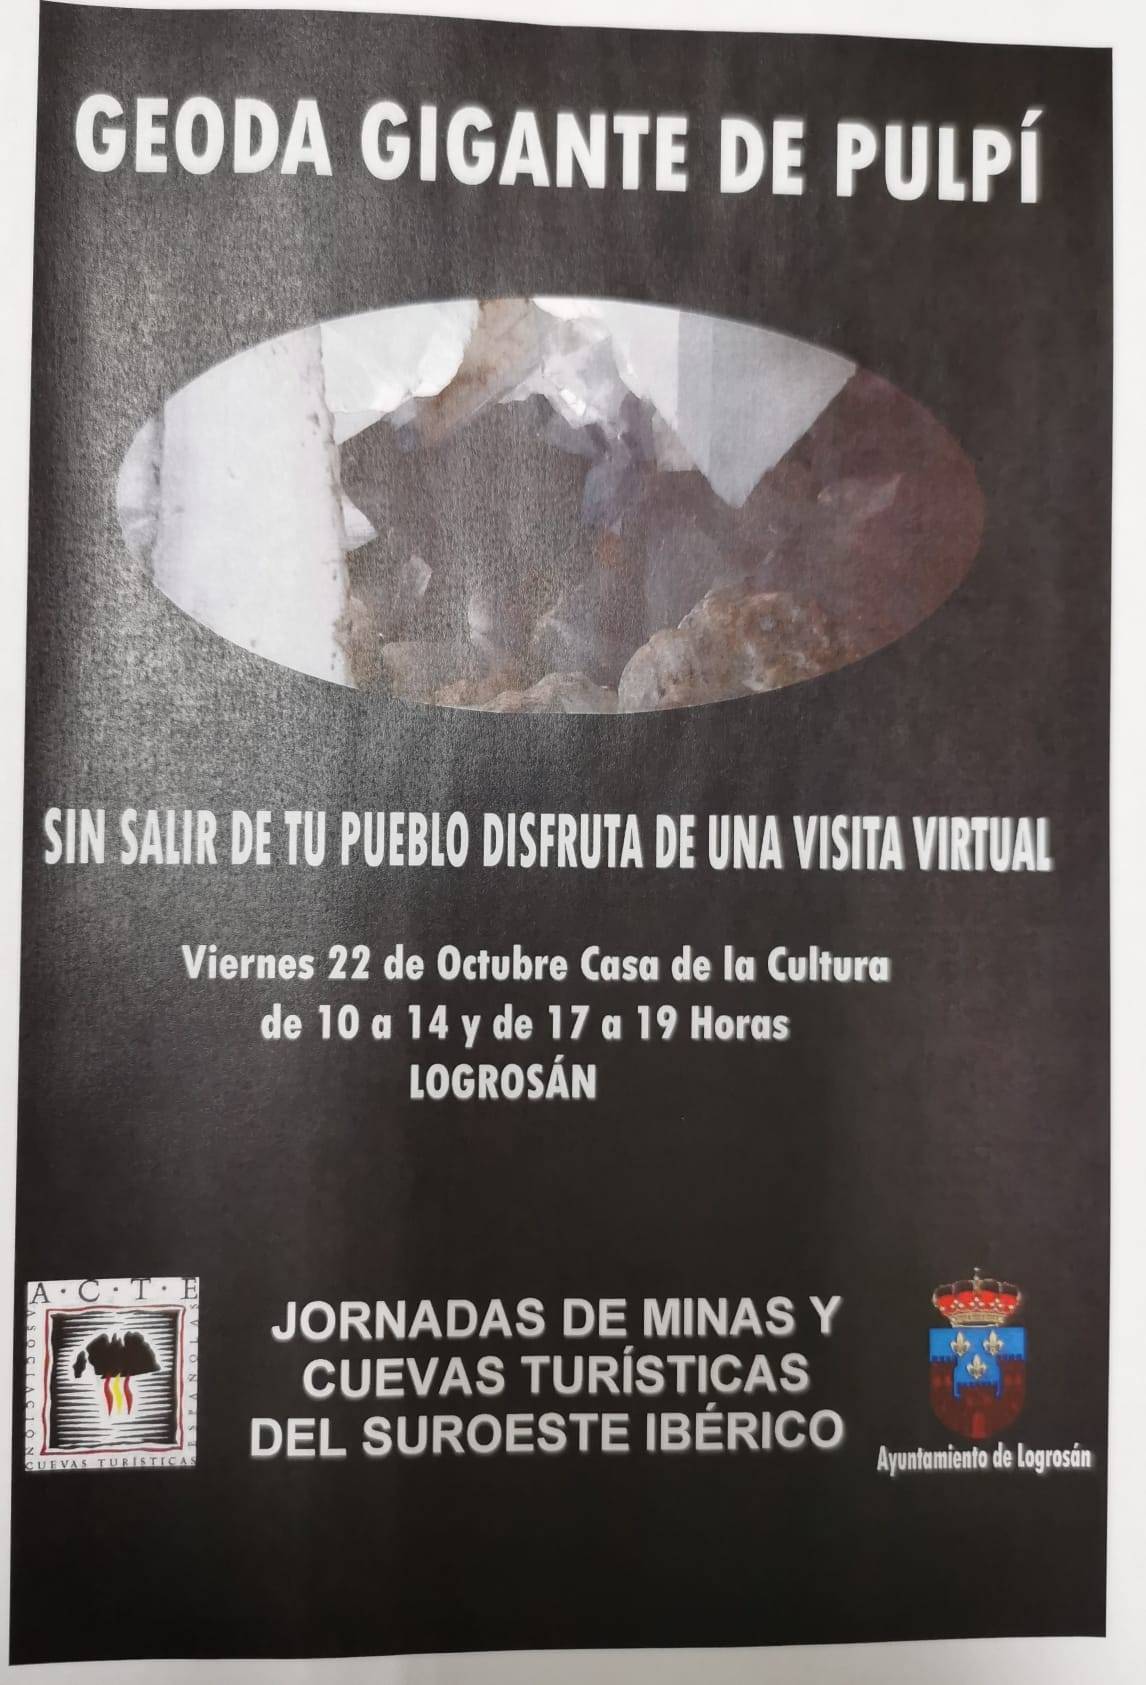 Geoda gigante de Pulpí (2021) - Logrosán (Cáceres)